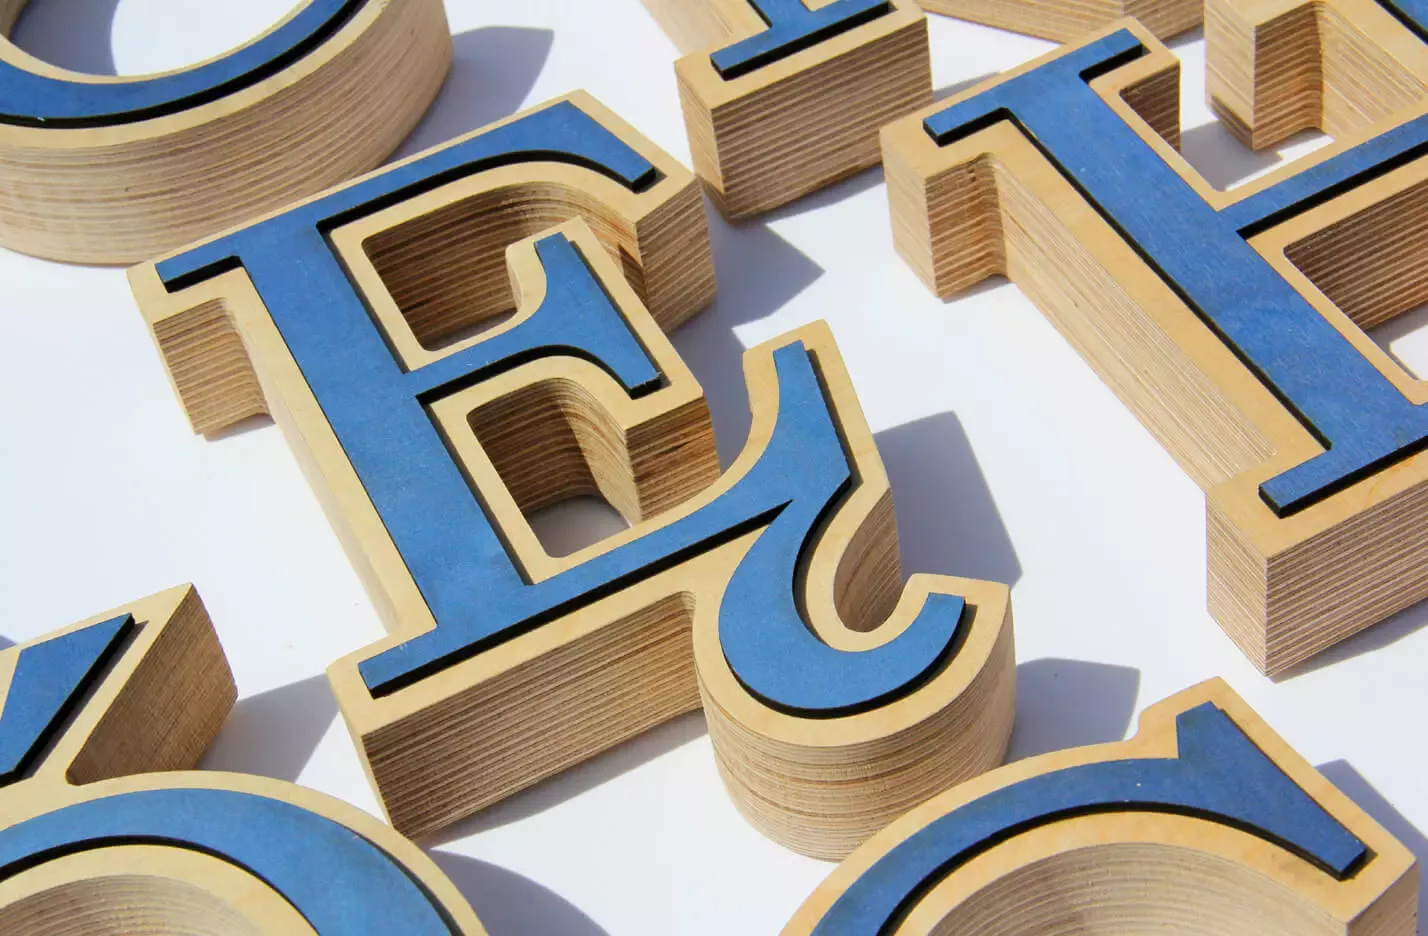 Drewniany alfabet - dekoracyjne litery z drewna z kolorze niebieskim